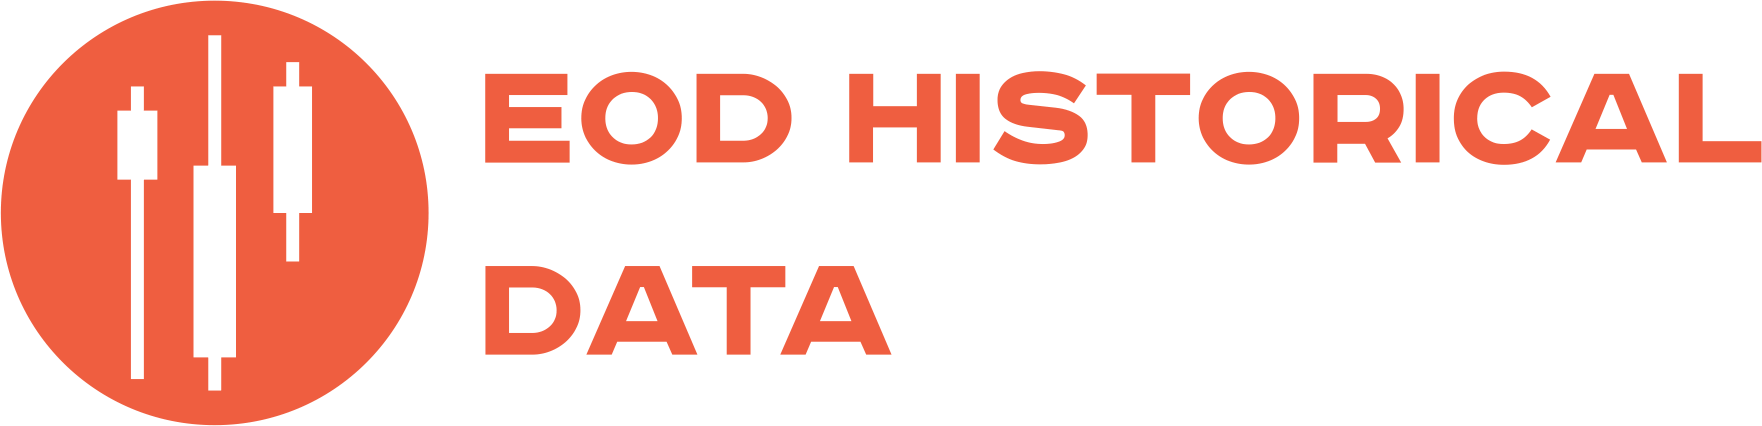 EOD Historical Data